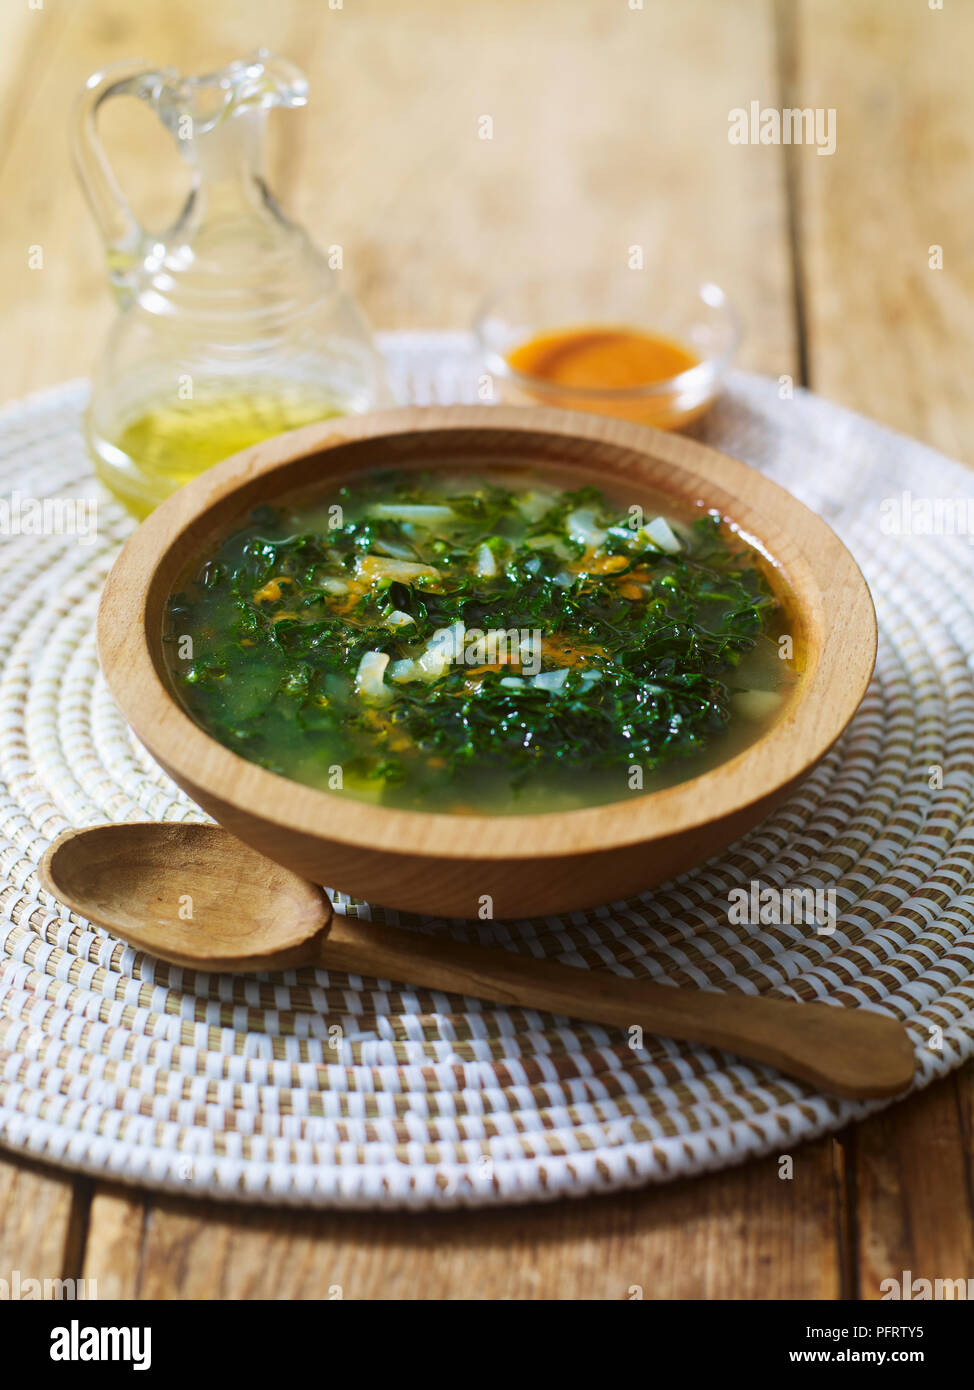 Caldo verde, soupe de légumes portugais Banque D'Images